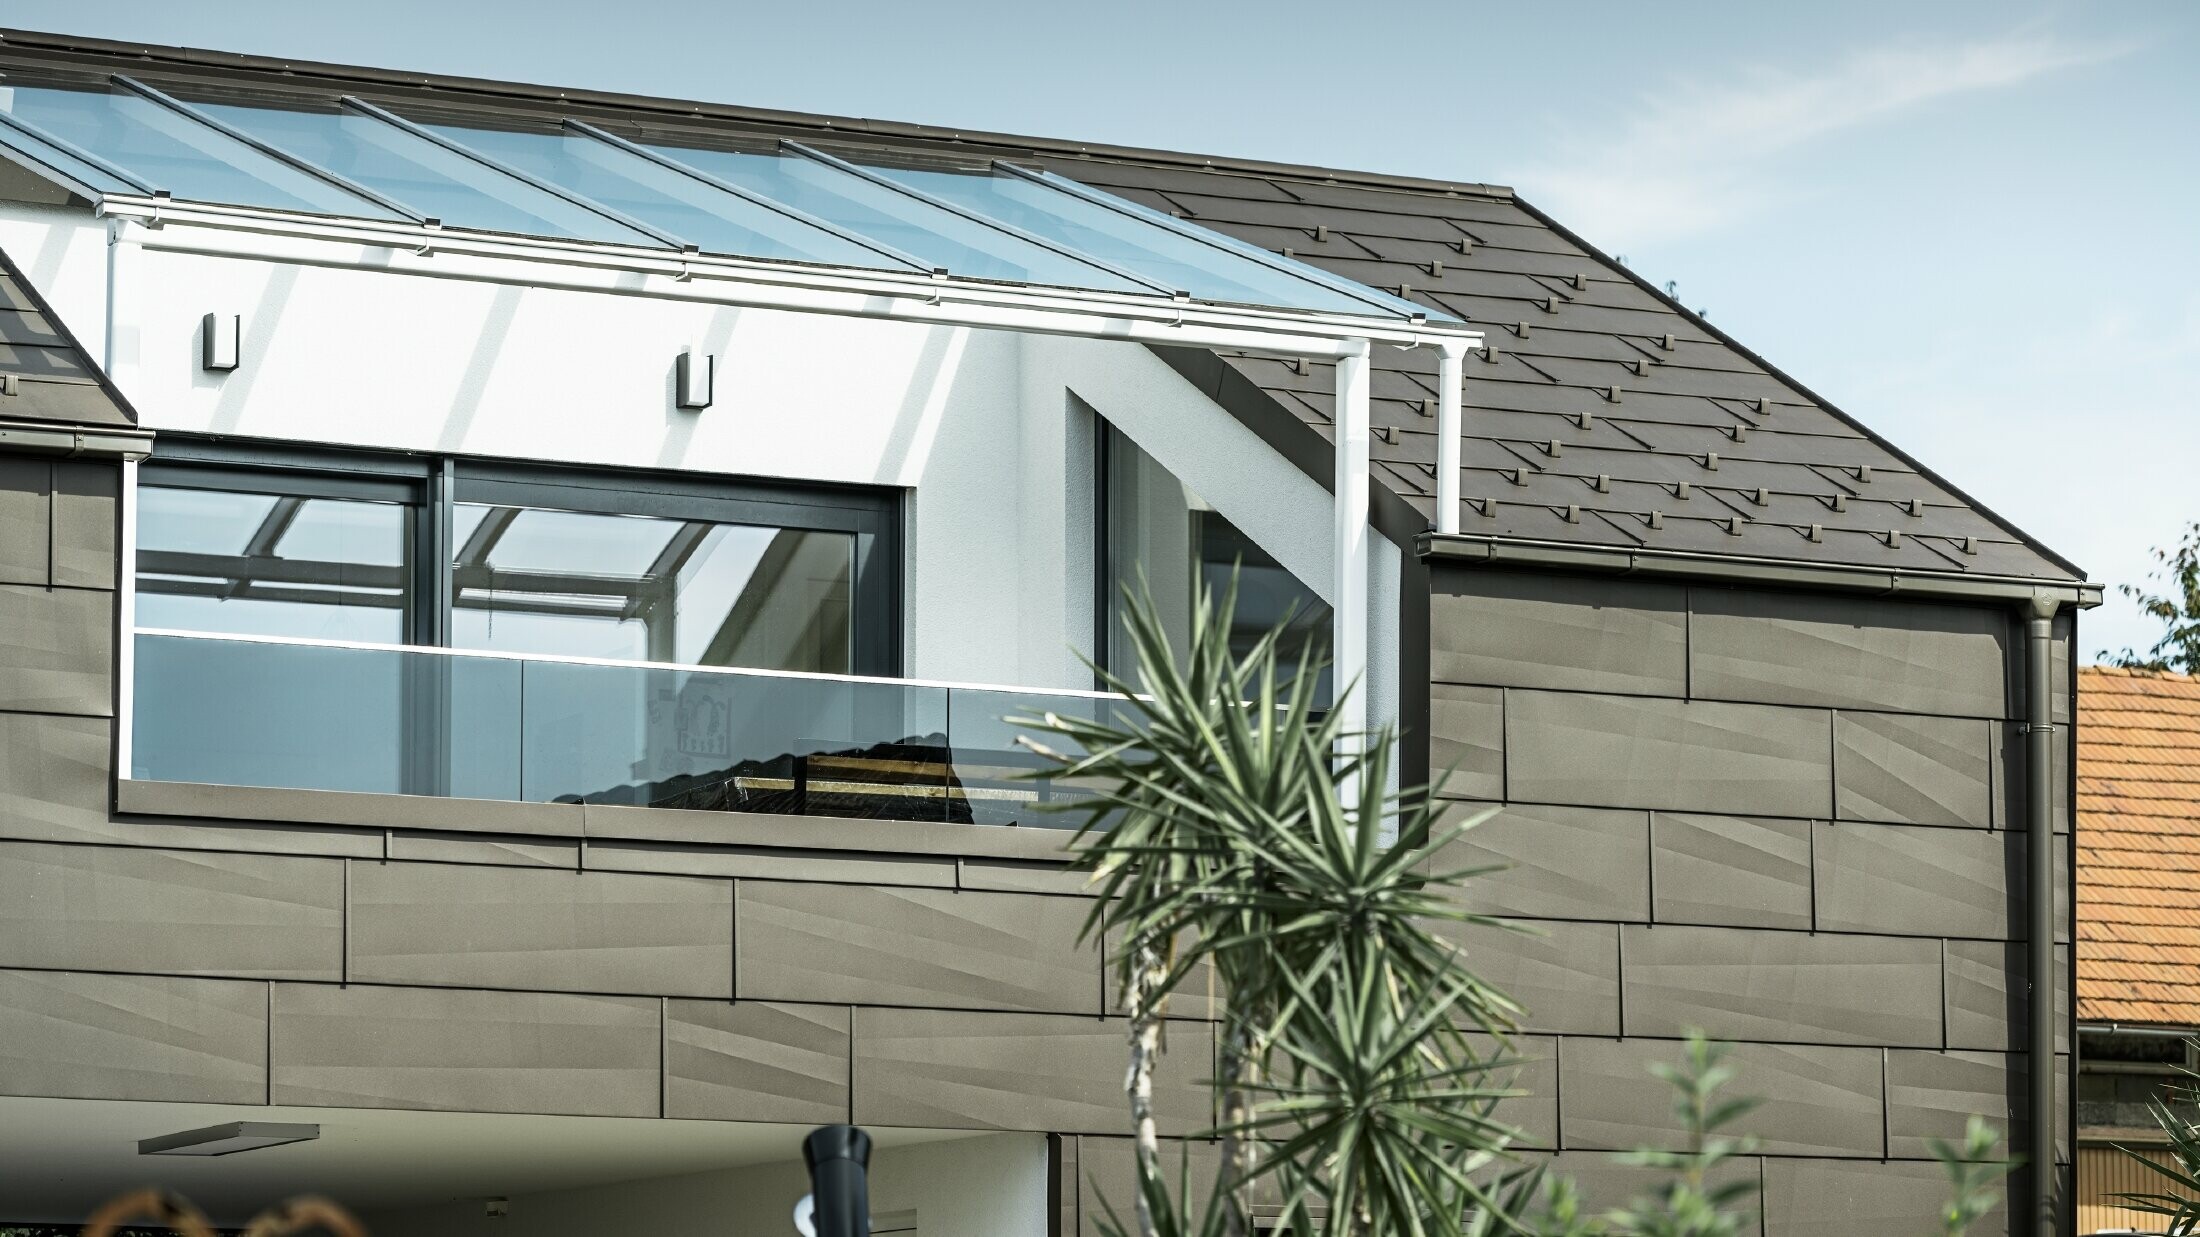 Tillbyggnad med takterrass täckt med PREFA komplett system. På tak och fasad användes PREFA tak- och fasadpanel FX.12. Dessutom används PREFA rektangulär ränna, PREFA stuprör och omfattande tillbehör i brunt för takavvattningen.